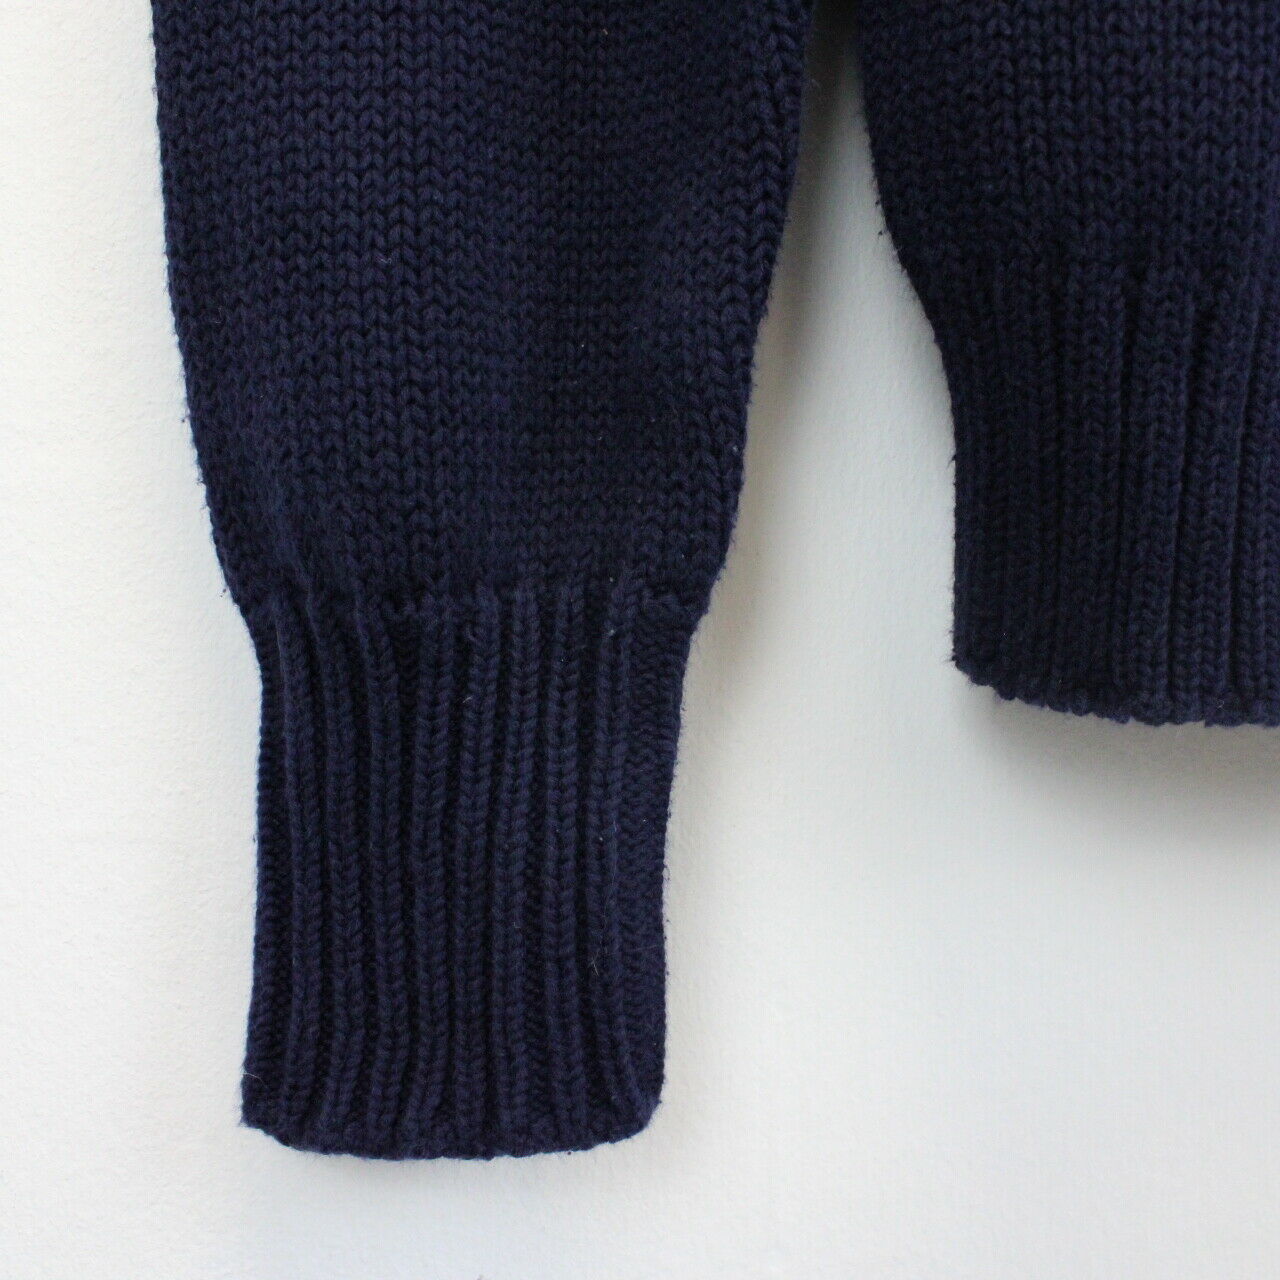 Womens RALPH LAUREN Knit Sweatshirt Navy Blue | Small